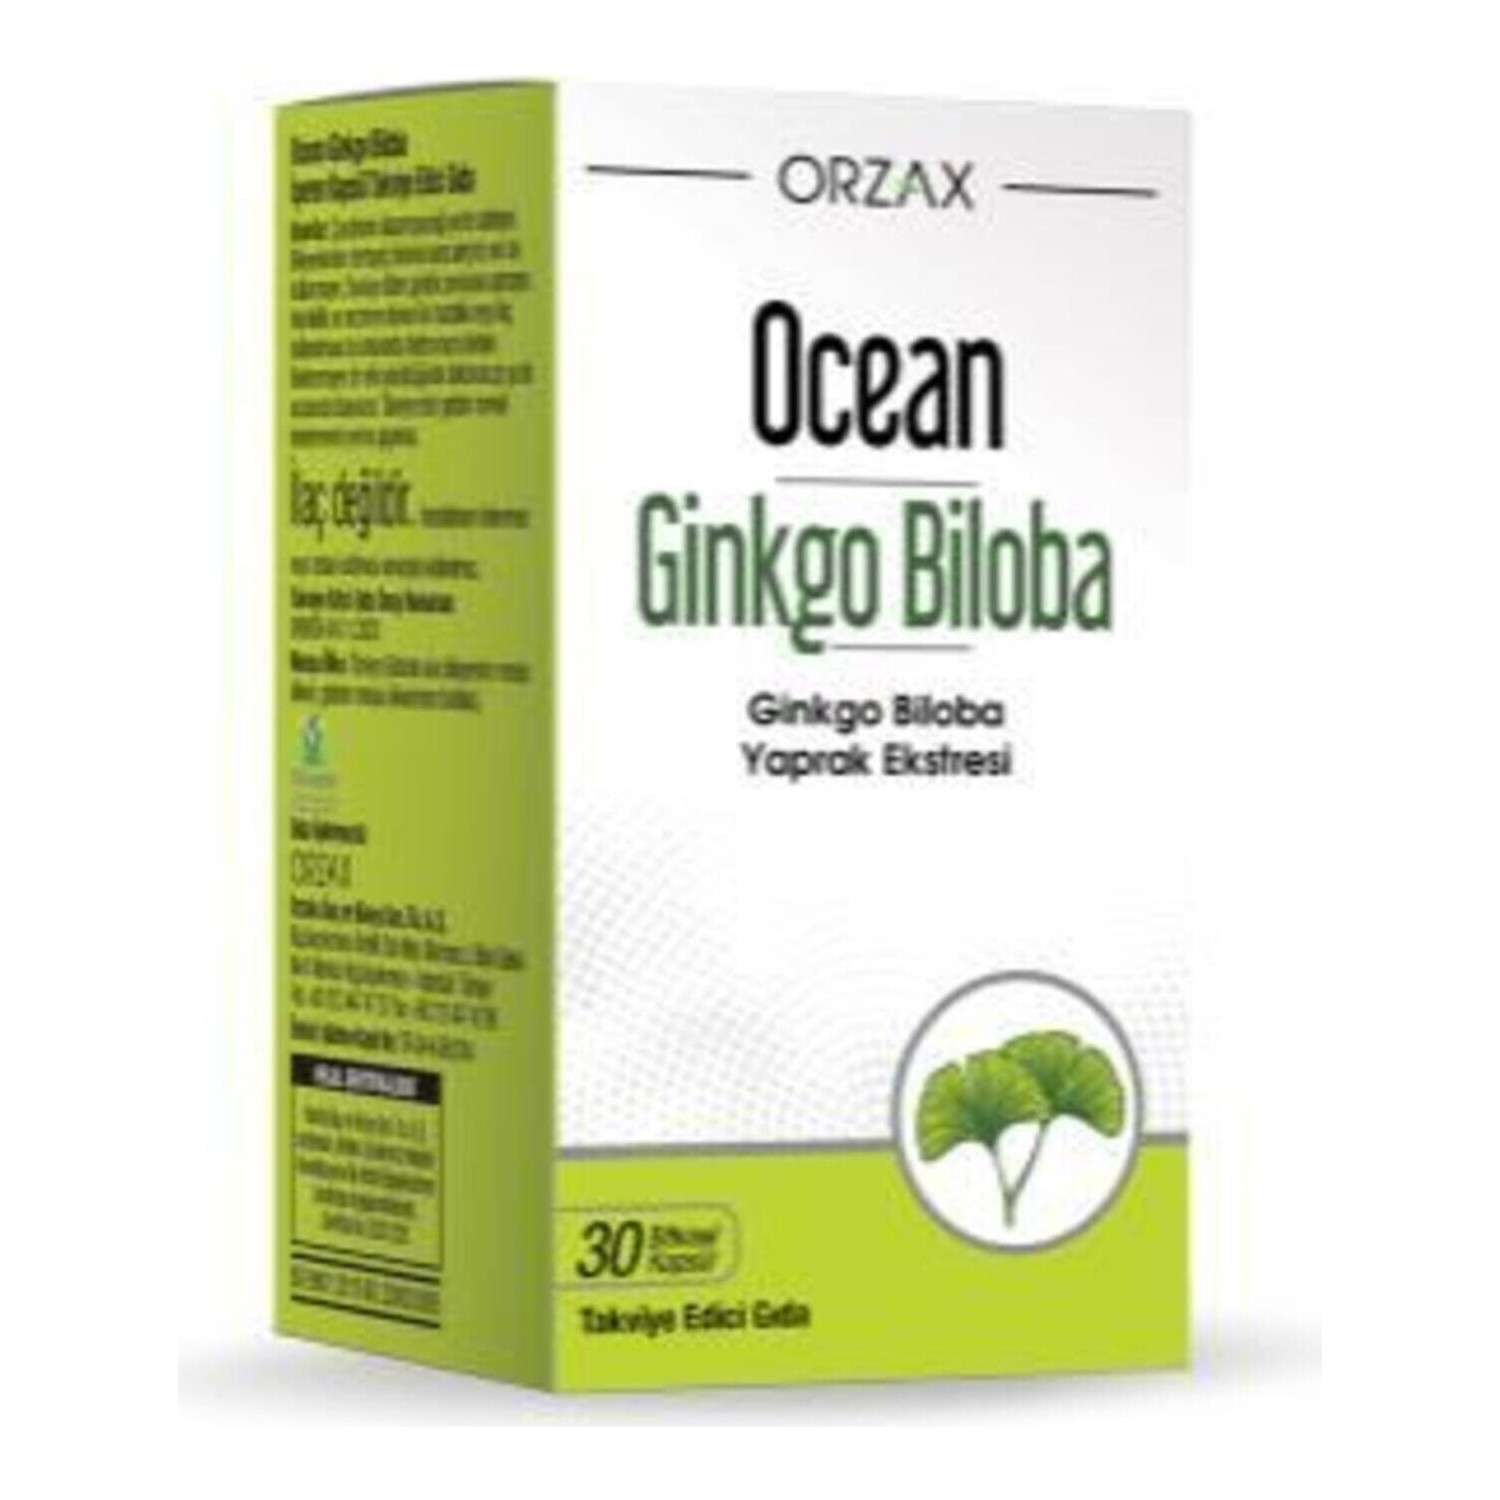 Пищевая добавка Ocean Ginkgo Biloba, 30 капсул цена и фото